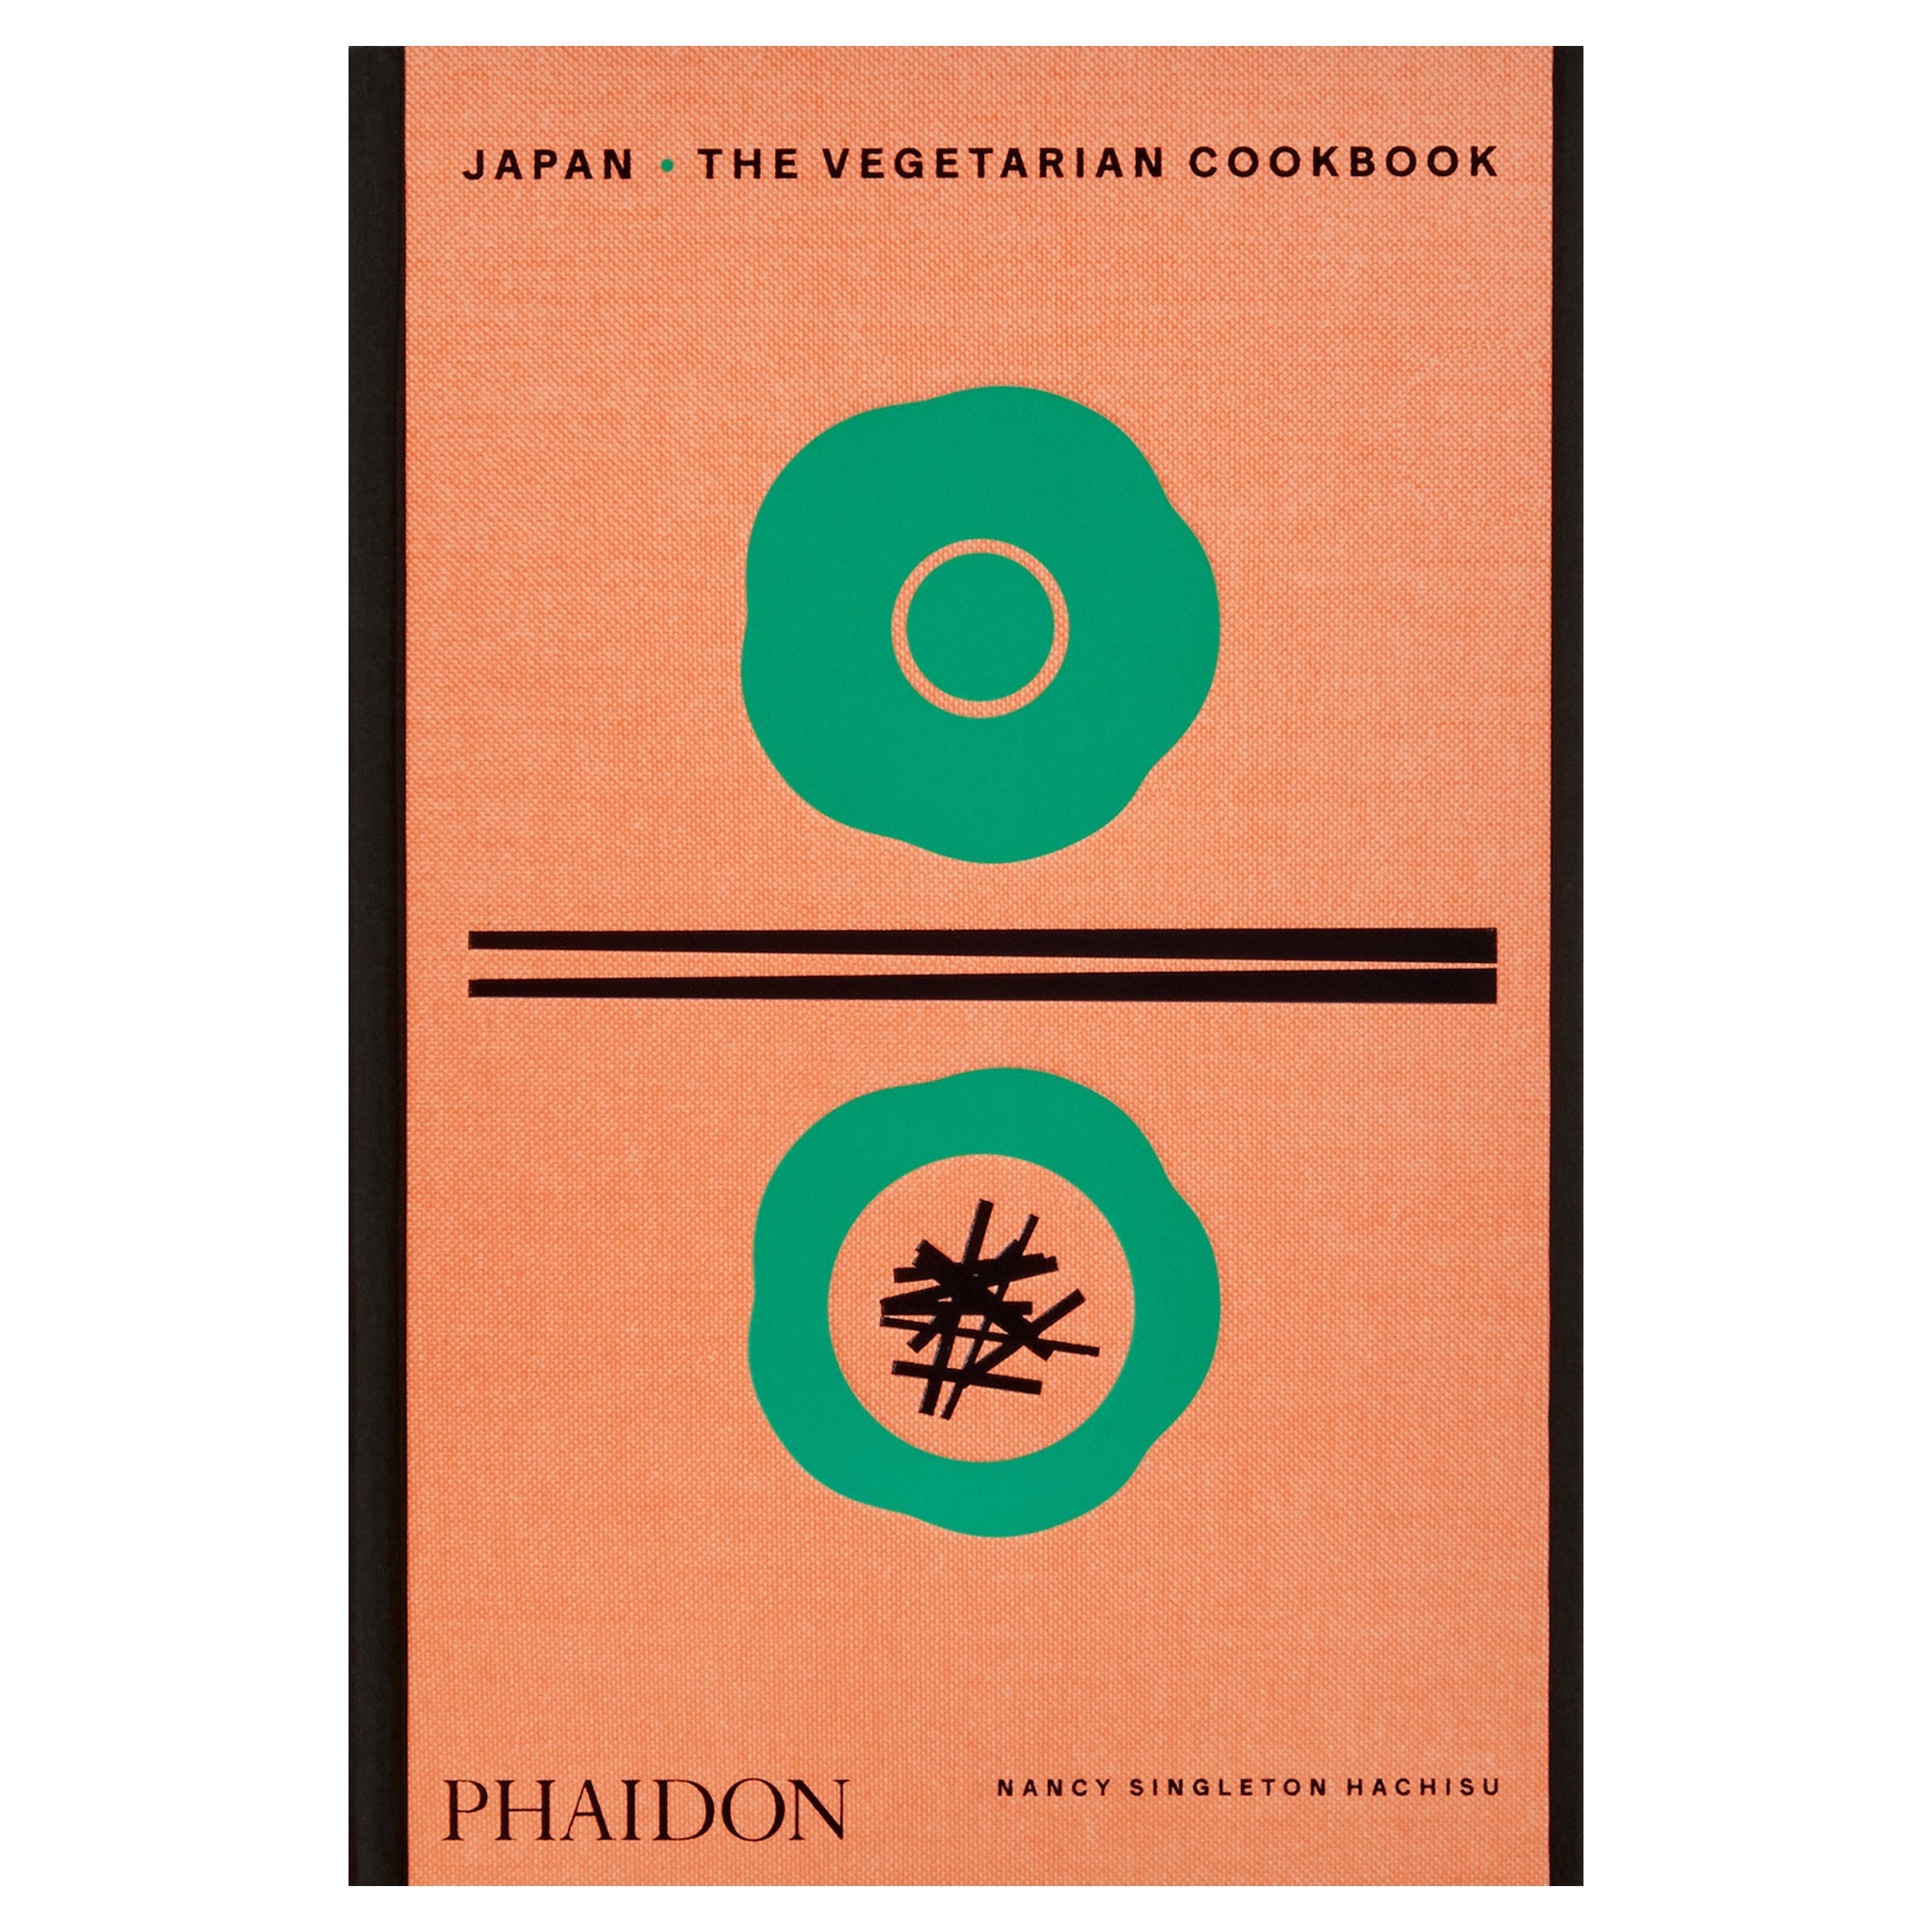 Japan: The Vegetarian Cookbook For Sale